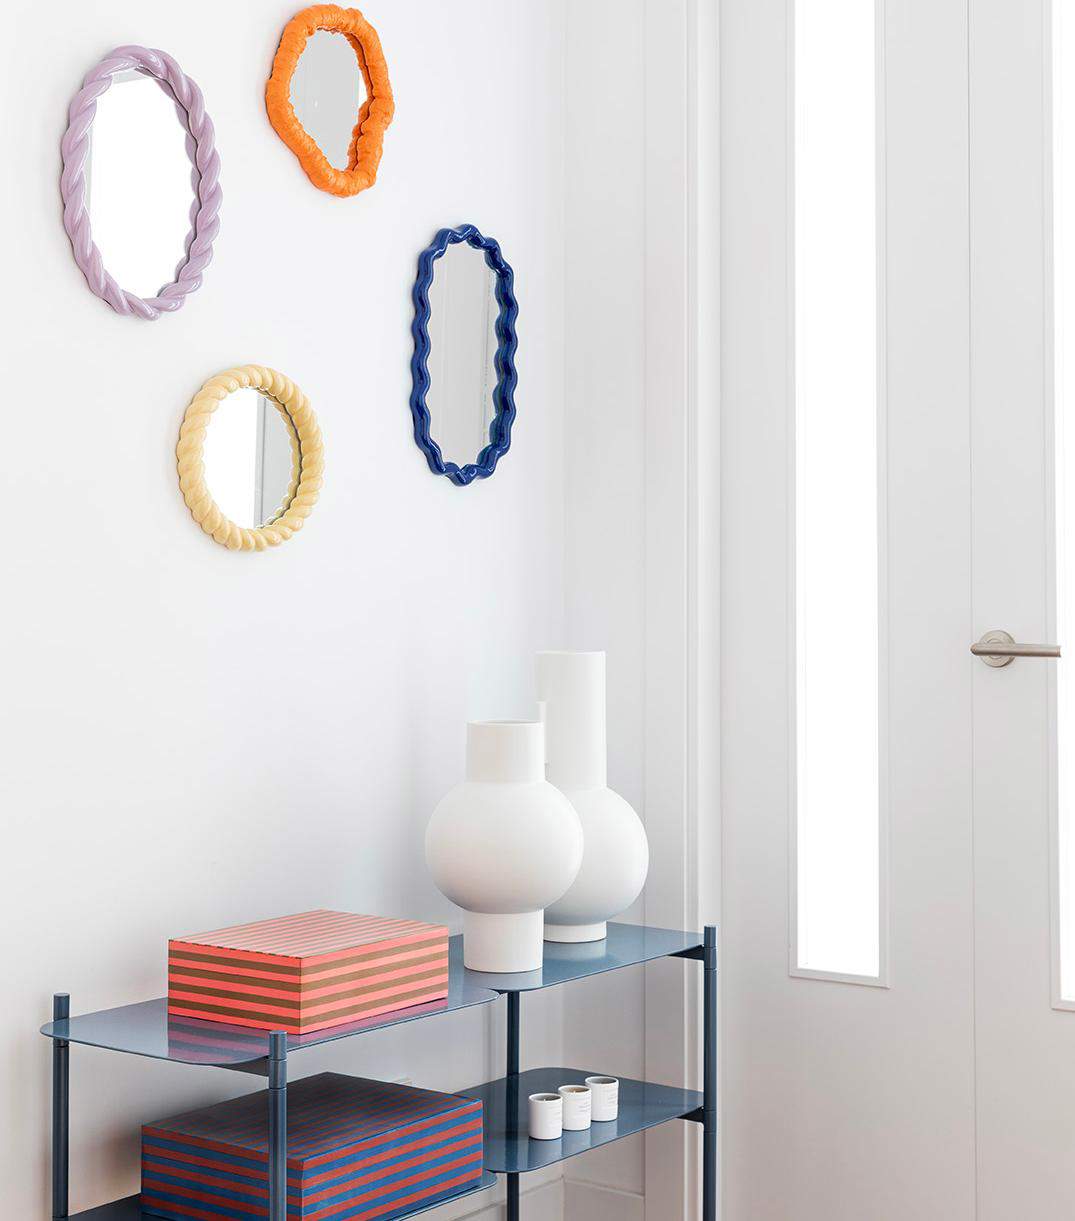 Recibidor decorado con una composición de espejos de formas y colores diferentes.